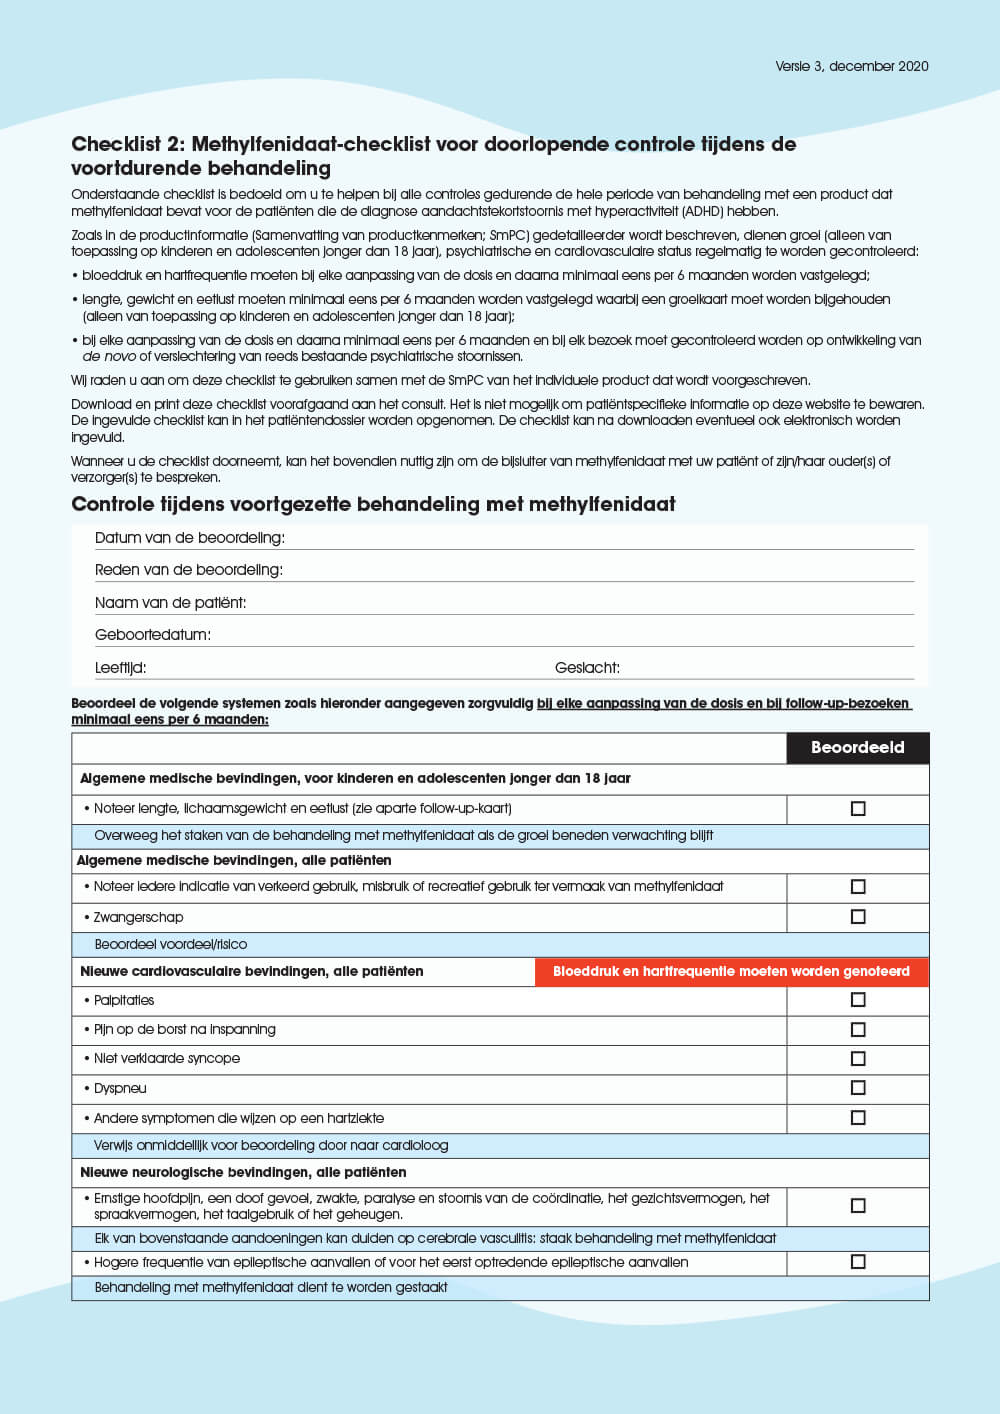 Preview: Checklist 2: Methylfenidaat-checklist voor doorlopende controle tijdens de voortdurende behandeling 